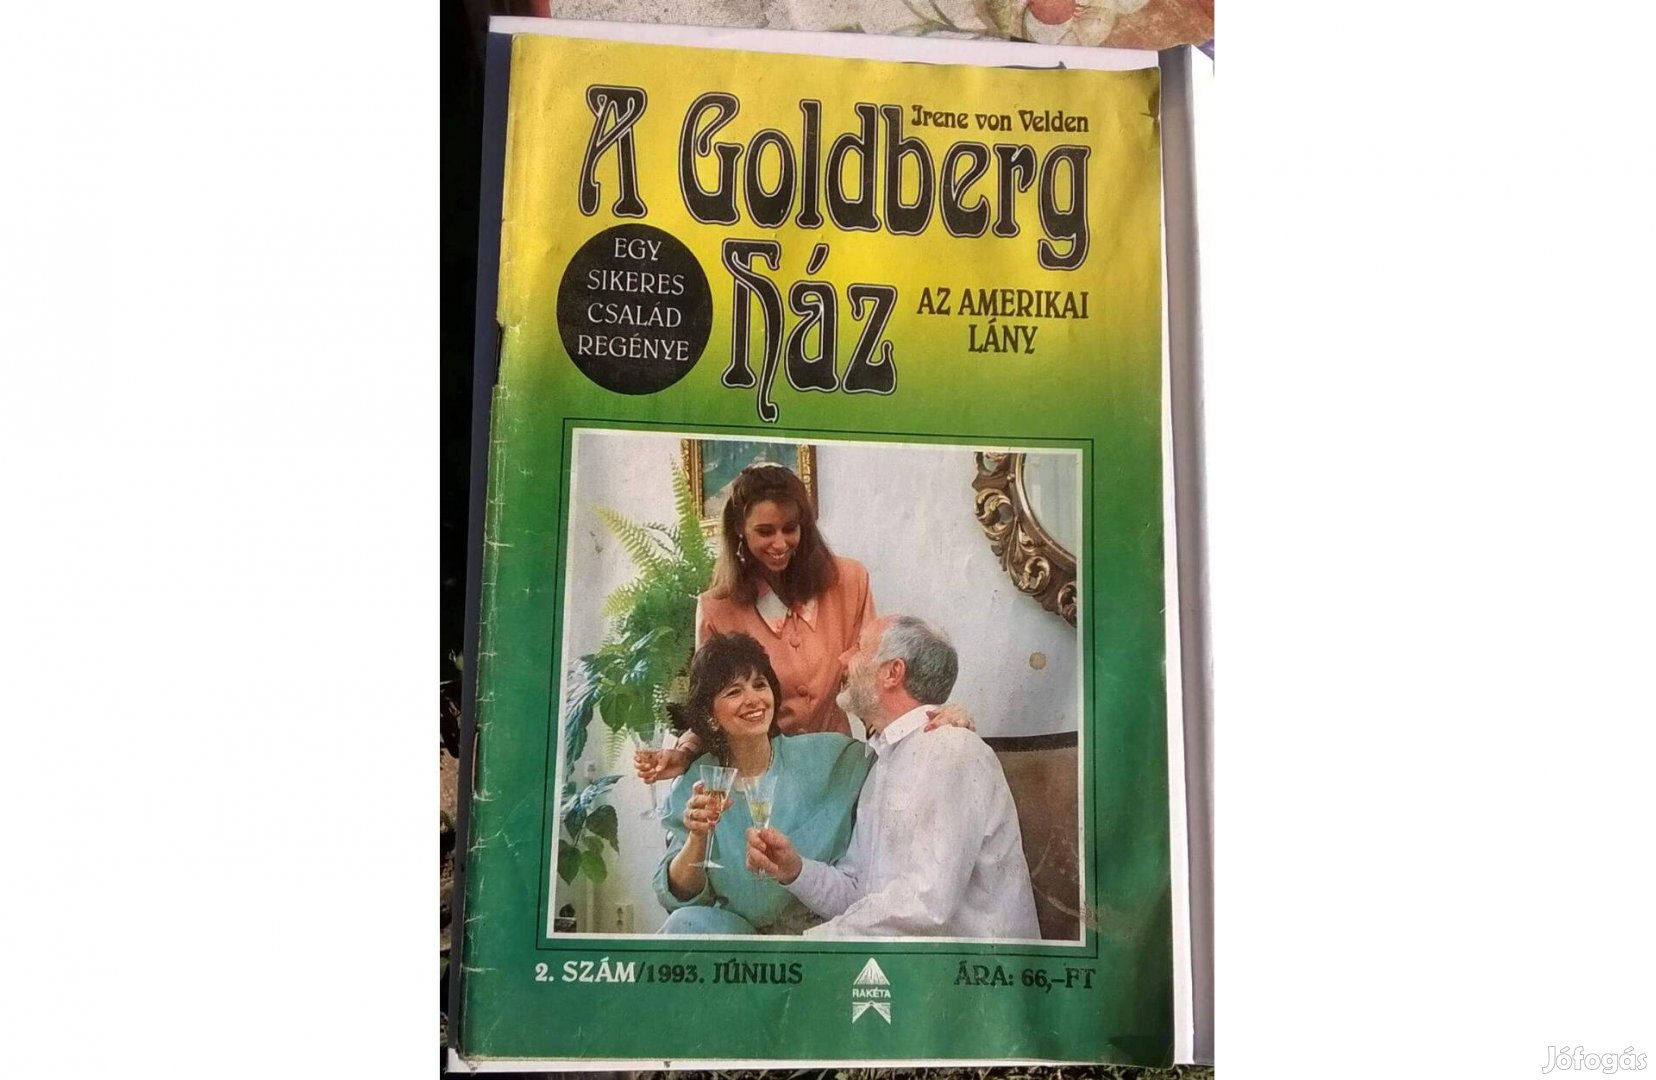 A Goldberg ház füzetek -egy sikeres család története